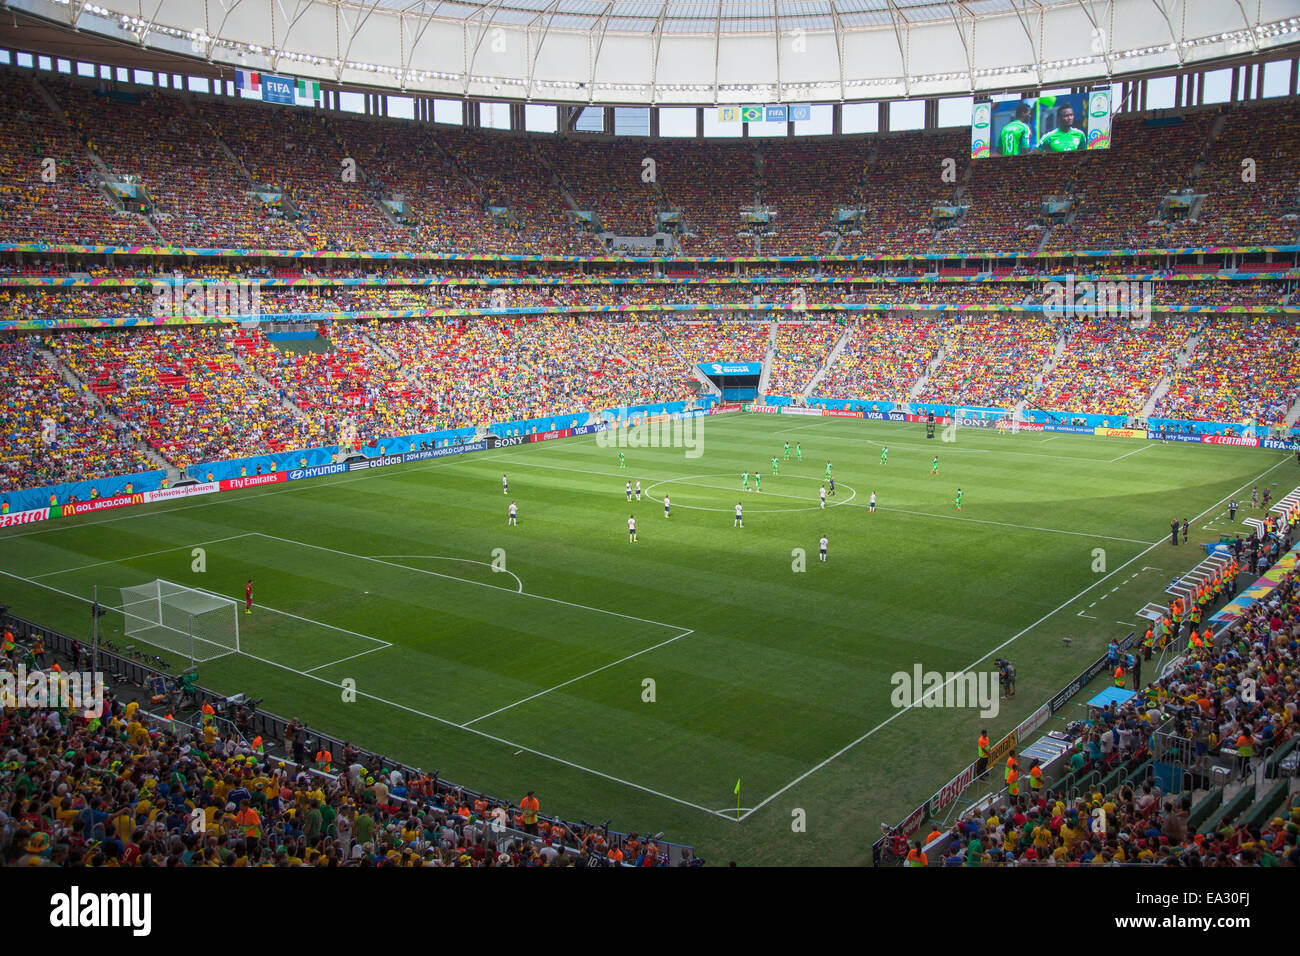 Fußball-WM Spiel in nationalen Mane Garrincha Stadium, Brasilia, Distrito Federal, Brasilien, Südamerika Stockfoto